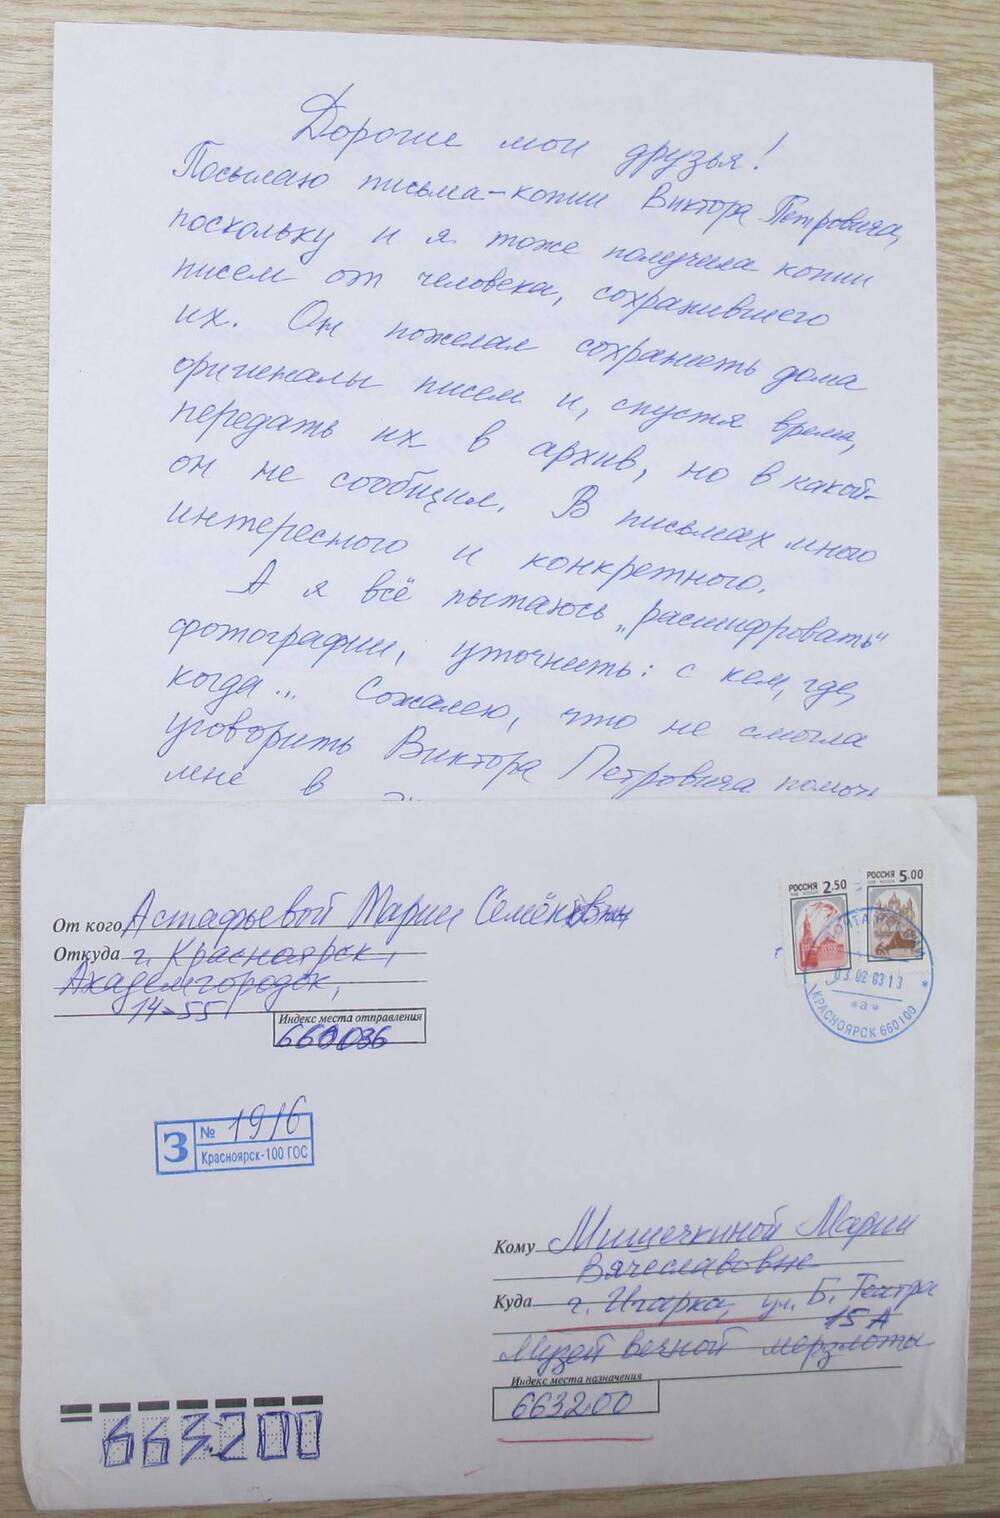 Письмо М. С. Корякиной - Астафьевой Музею вечной мерзлоты.